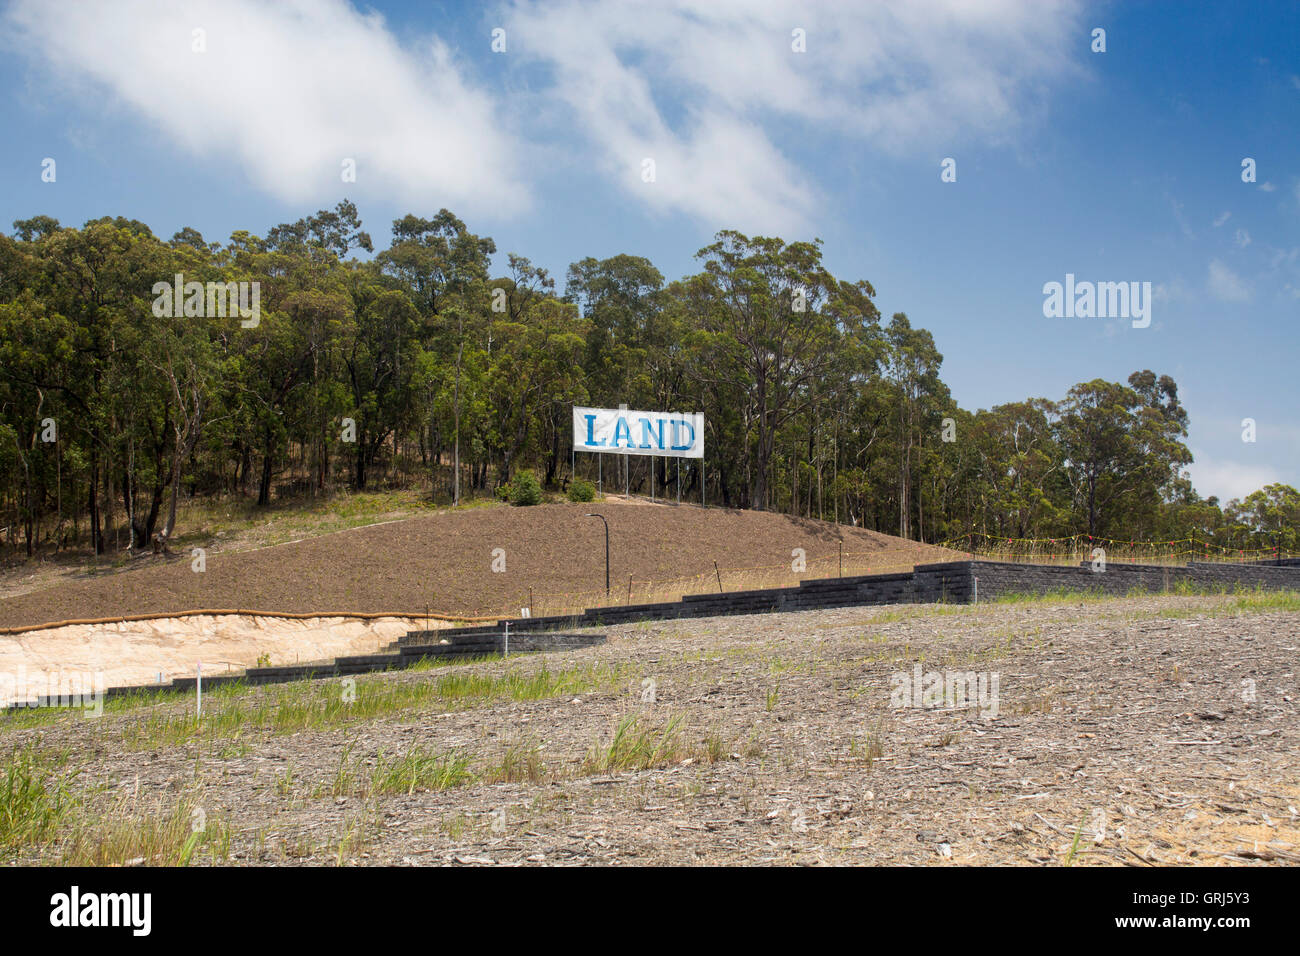 Signe de terre terrain à vendre a vendre terrain de développement de la propriété des forêts d'Eucalyptus bushland bush derrière NSW Australie Banque D'Images